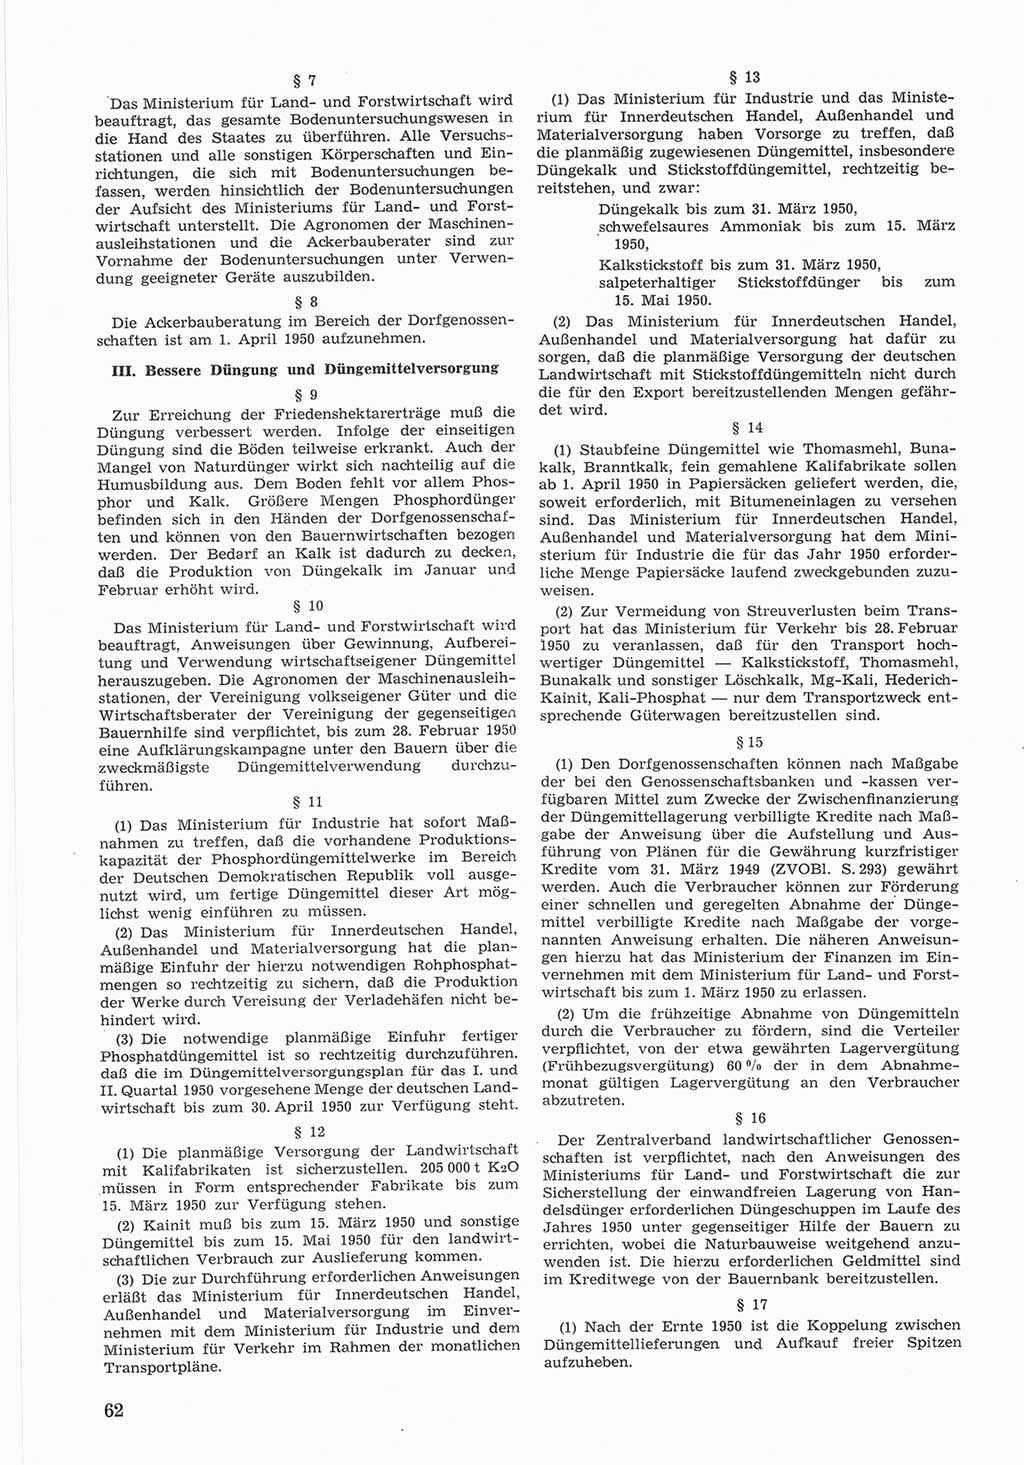 Provisorische Volkskammer (VK) der Deutschen Demokratischen Republik (DDR) 1949-1950, Dokument 662 (Prov. VK DDR 1949-1950, Dok. 662)